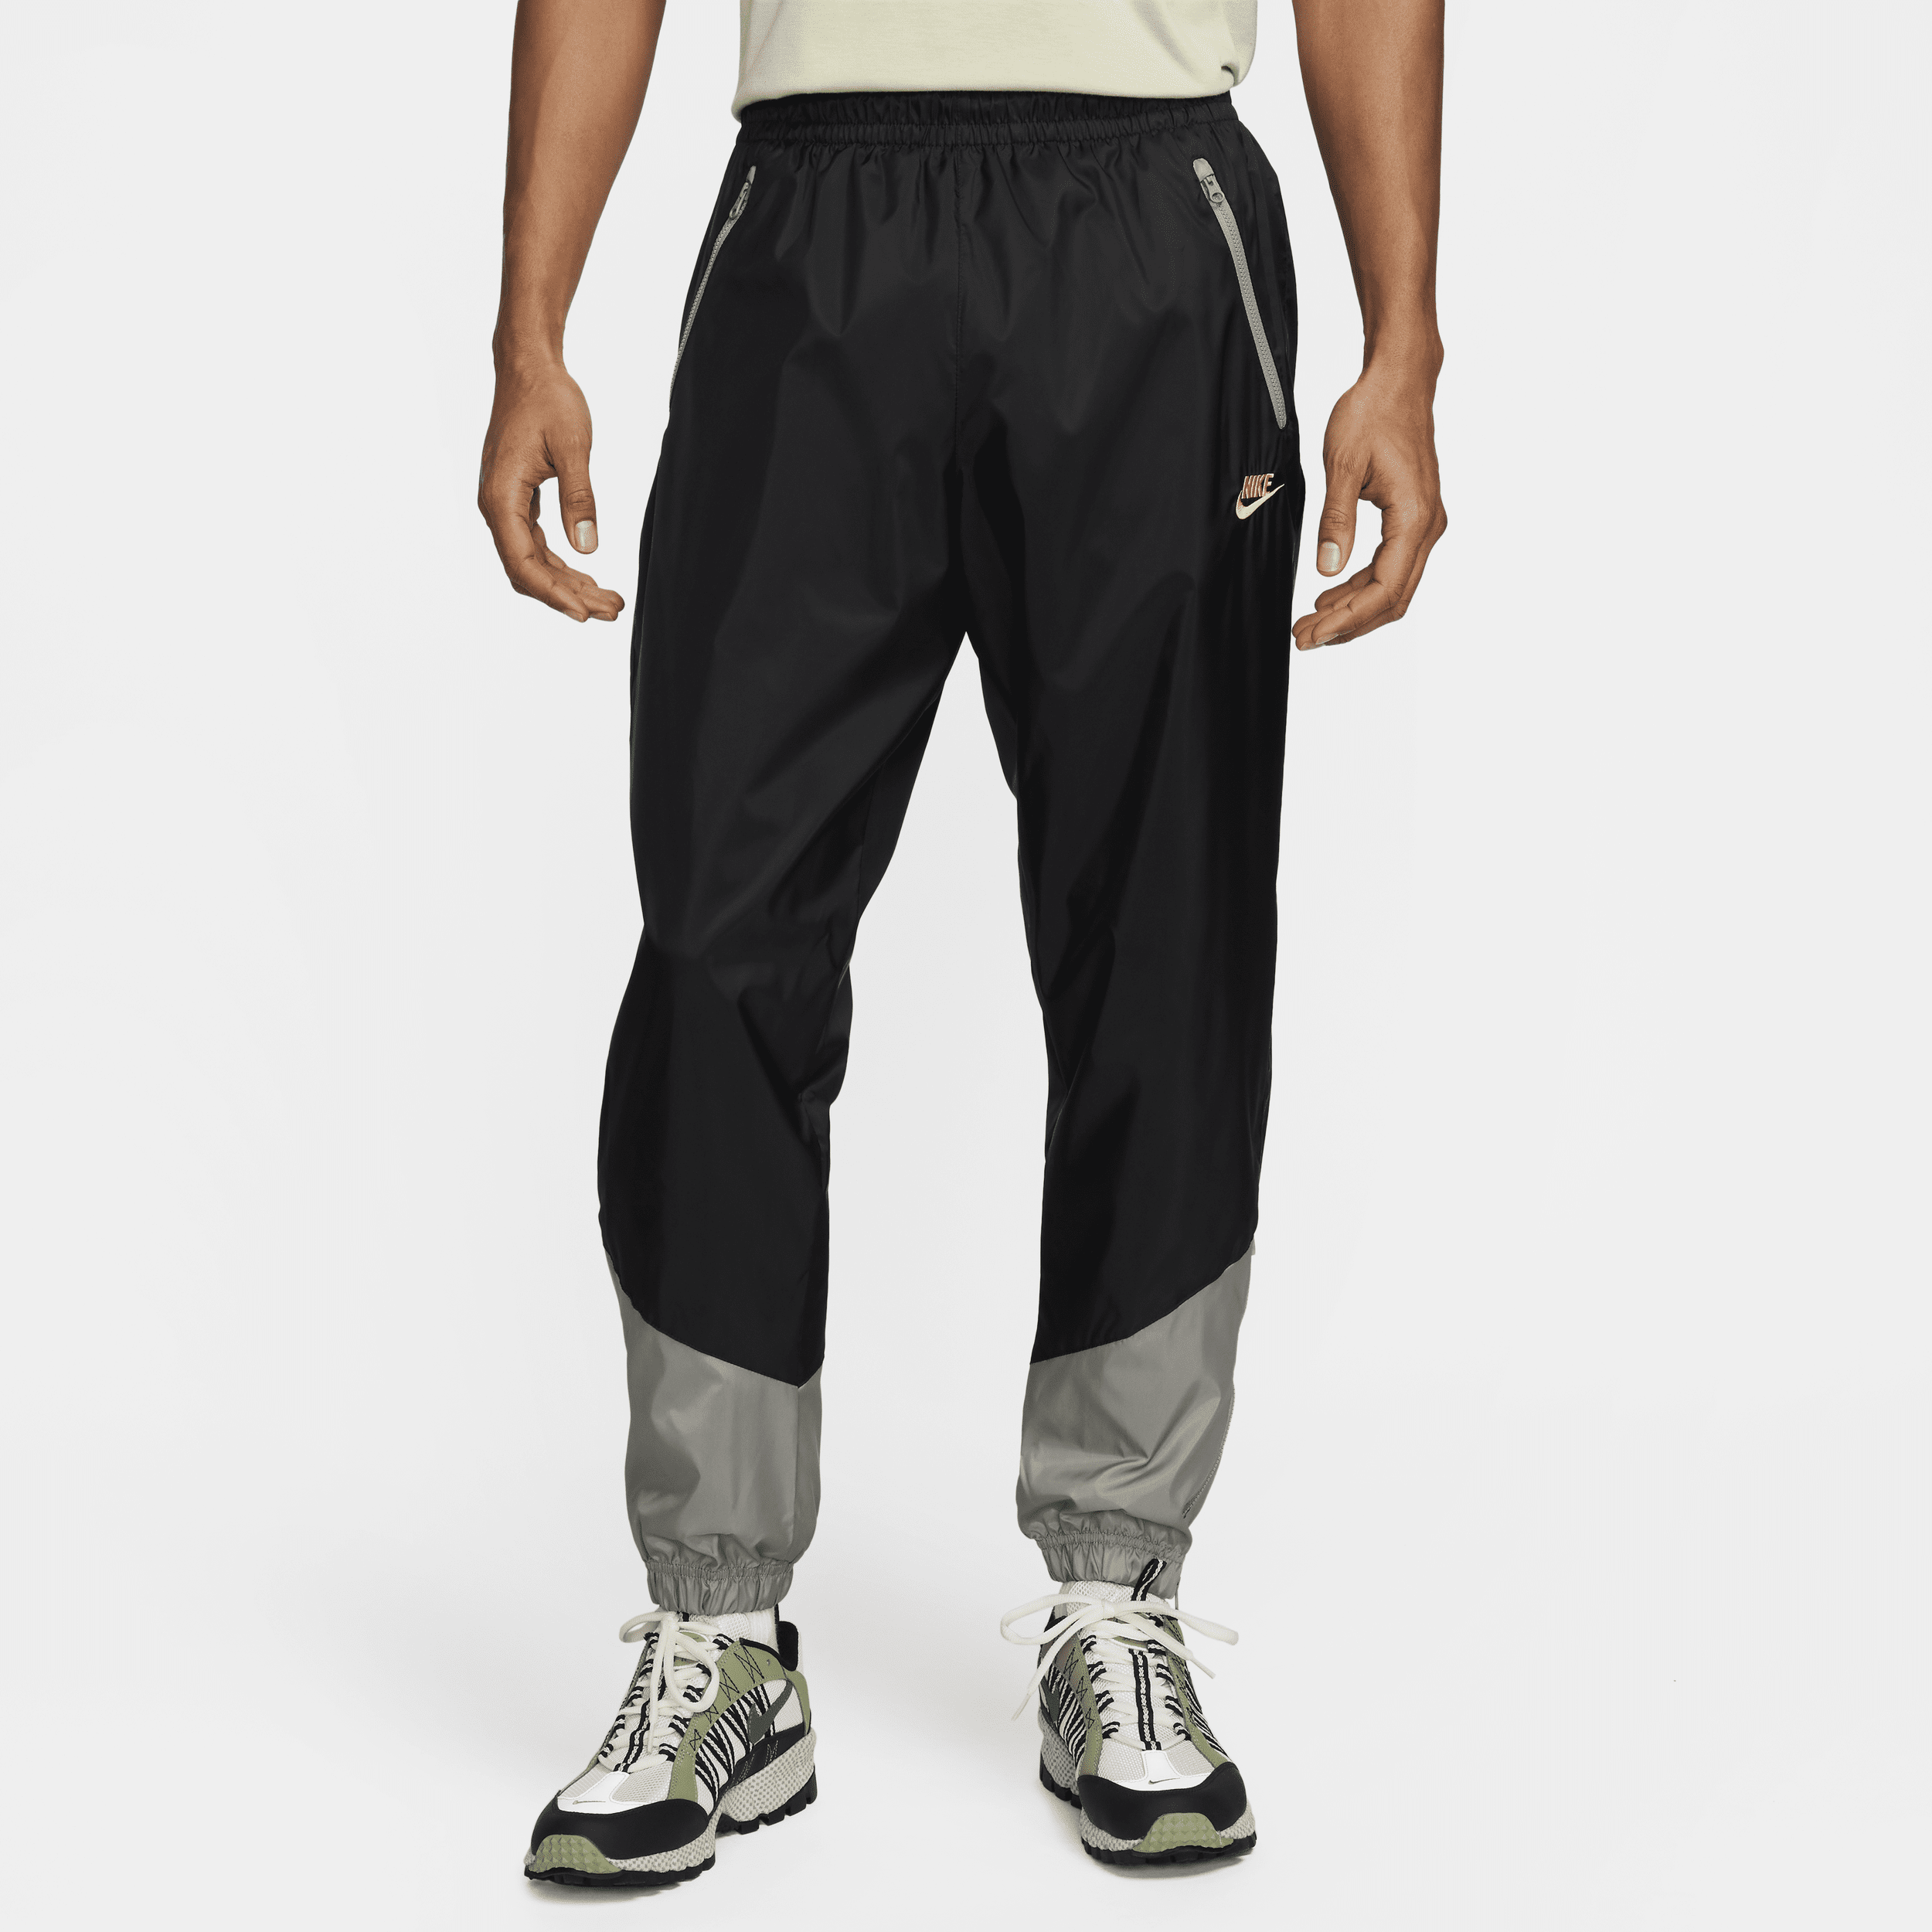 Nike Windrunner Pantalón de tejido Woven con forro - Hombre - Negro